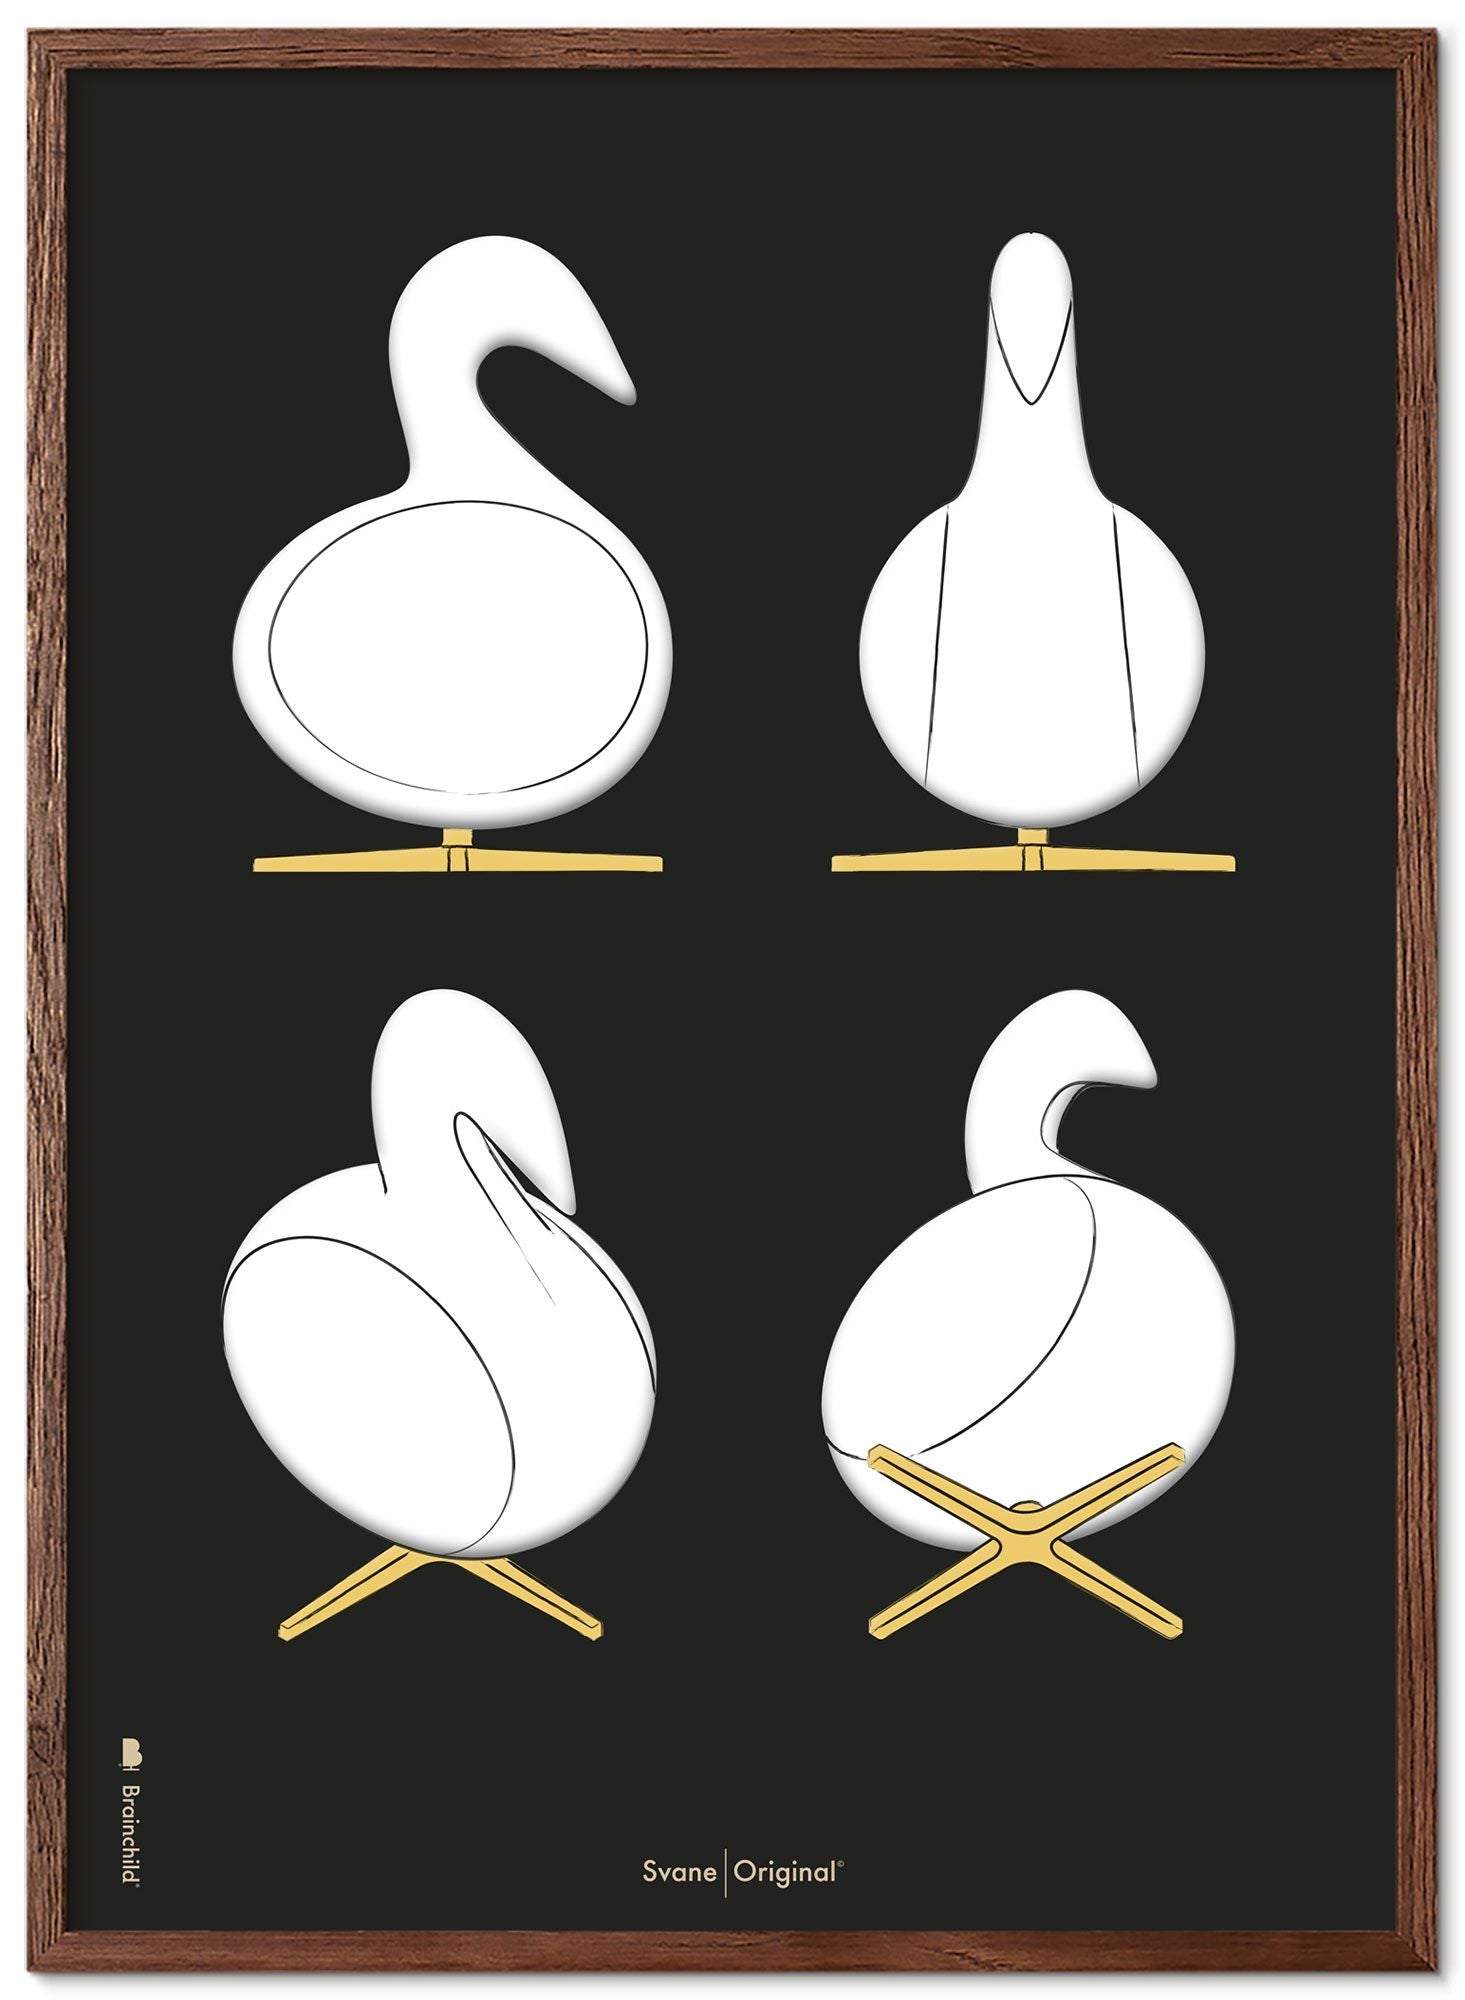 Marco de póster de bocetos de diseño de Swan de creación de madera oscura 70x100 cm, fondo negro